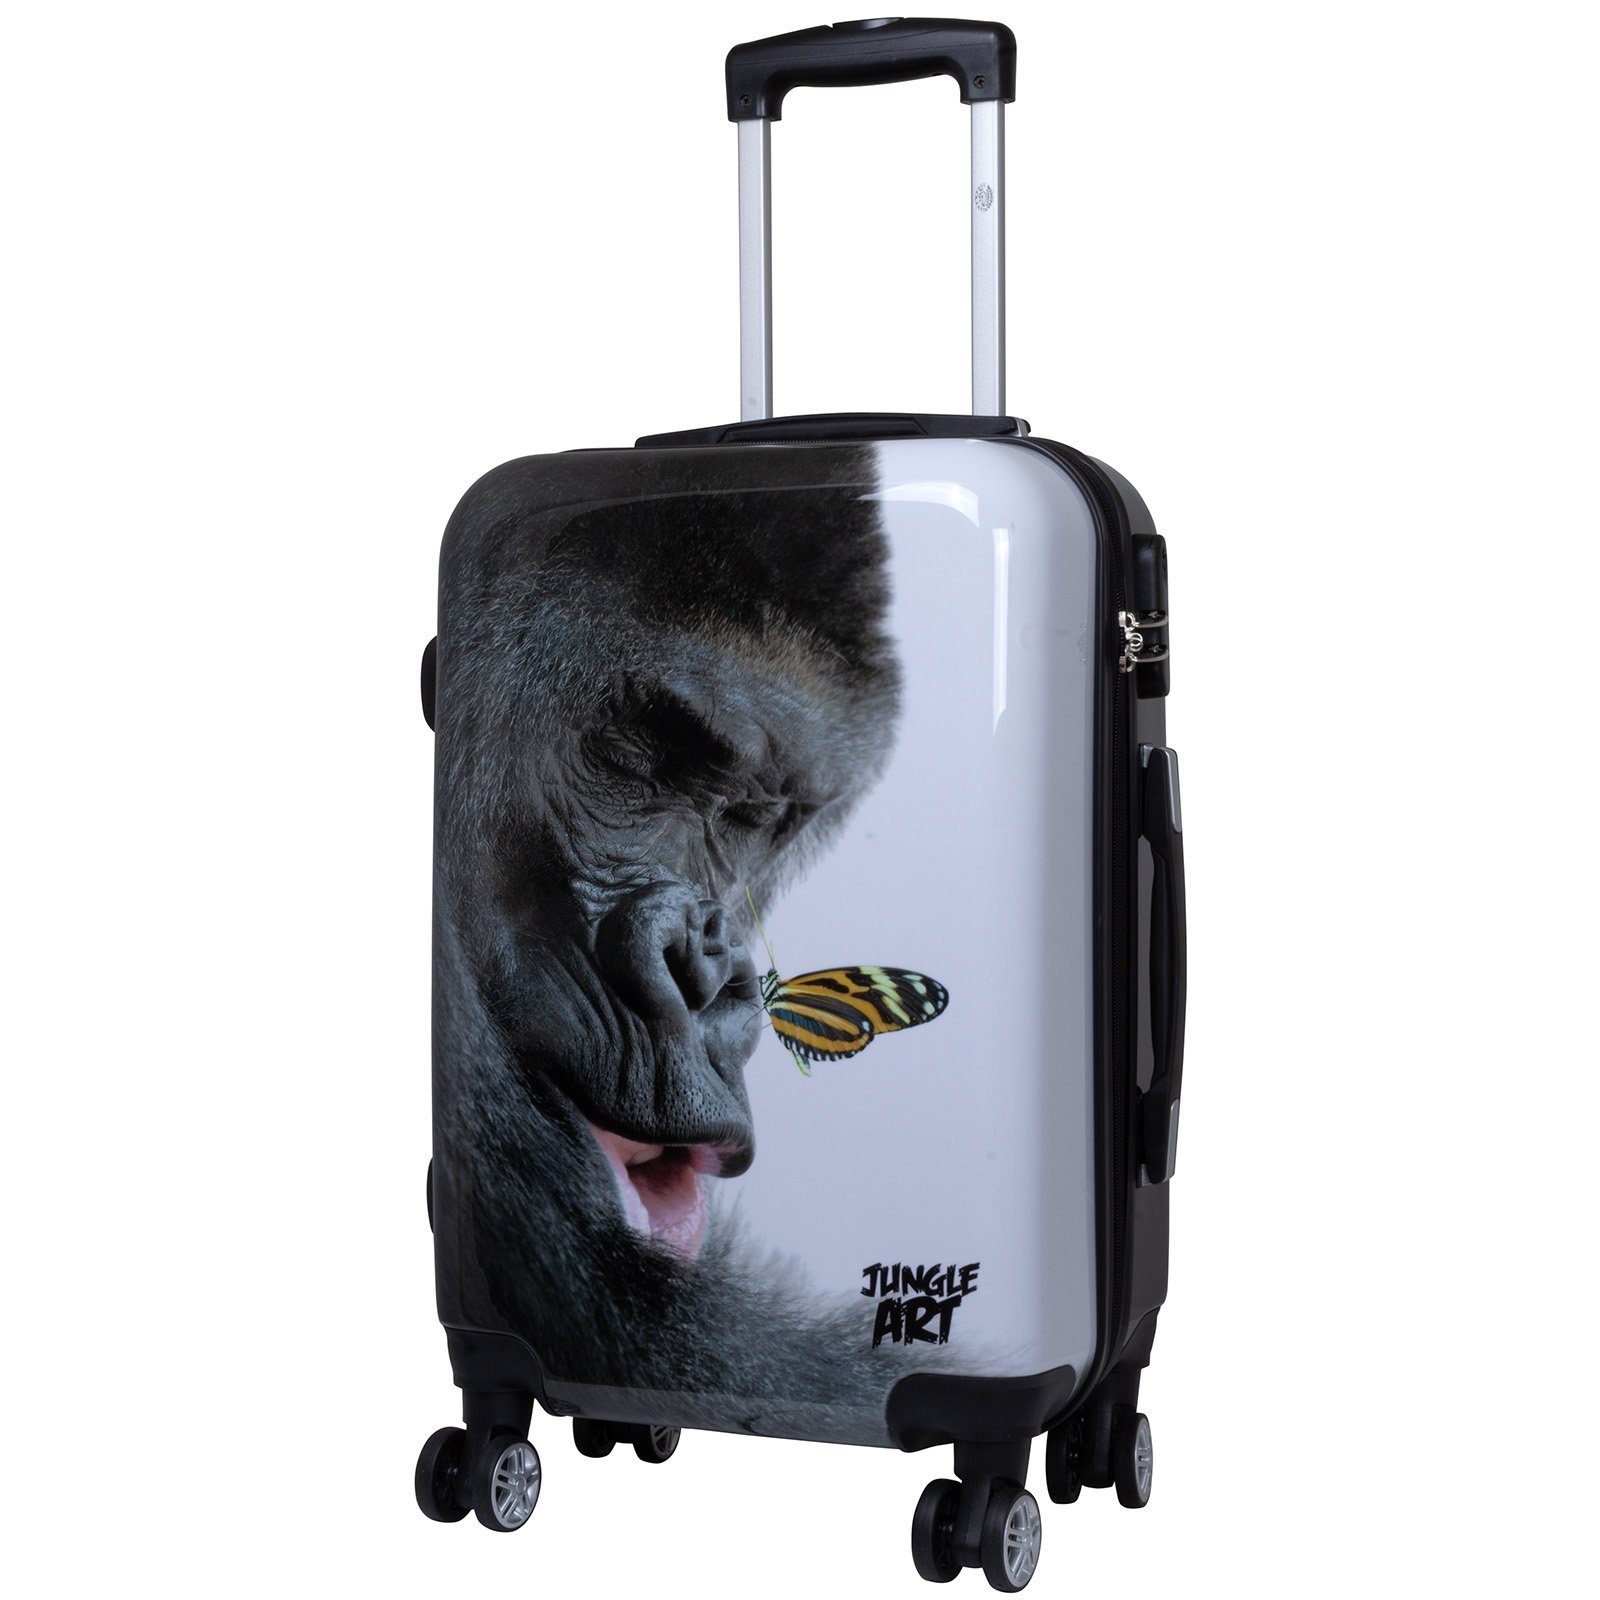 Trendyshop365 Hartschalen-Trolley Gorilla, bunter Koffer mit Tier-Motiv, 3 Größen, 4 Rollen, Zahlenschloss, Polycarbonat, Dehnfalte